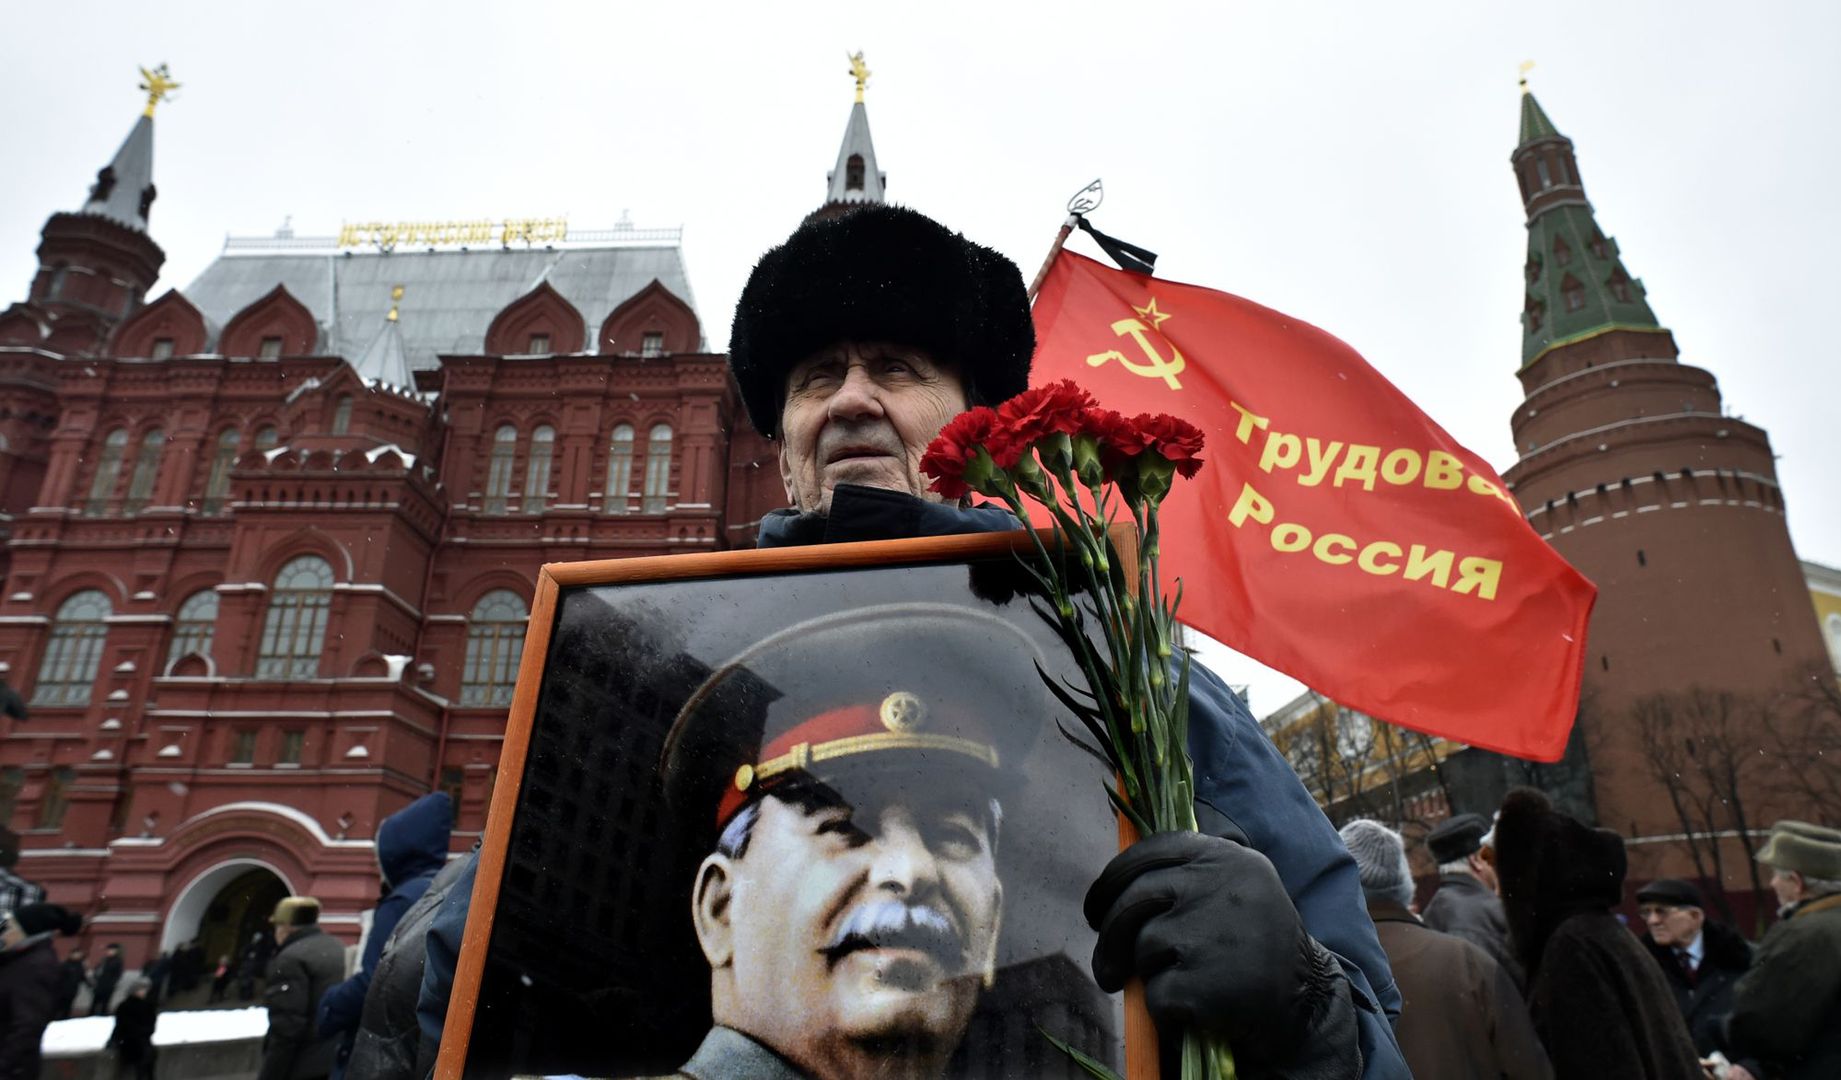 Rosjanie chcą powrotu ZSRR? Nowy sondaż